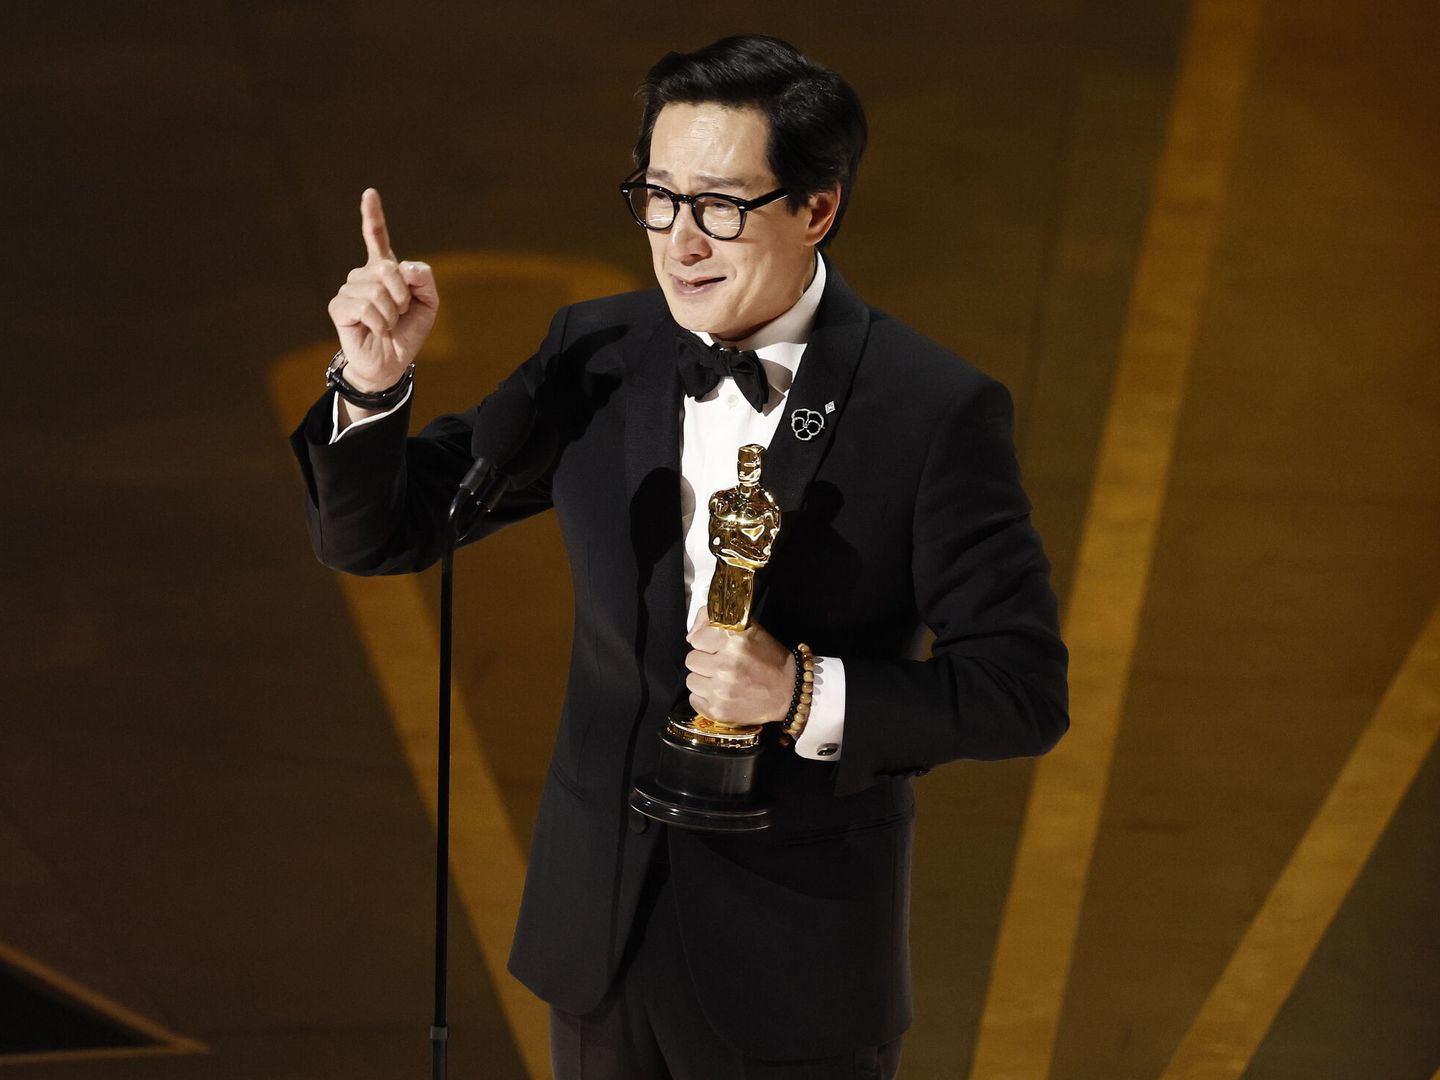 El actor Ke Huy Quan, durante su discurso al recoger el Oscar.